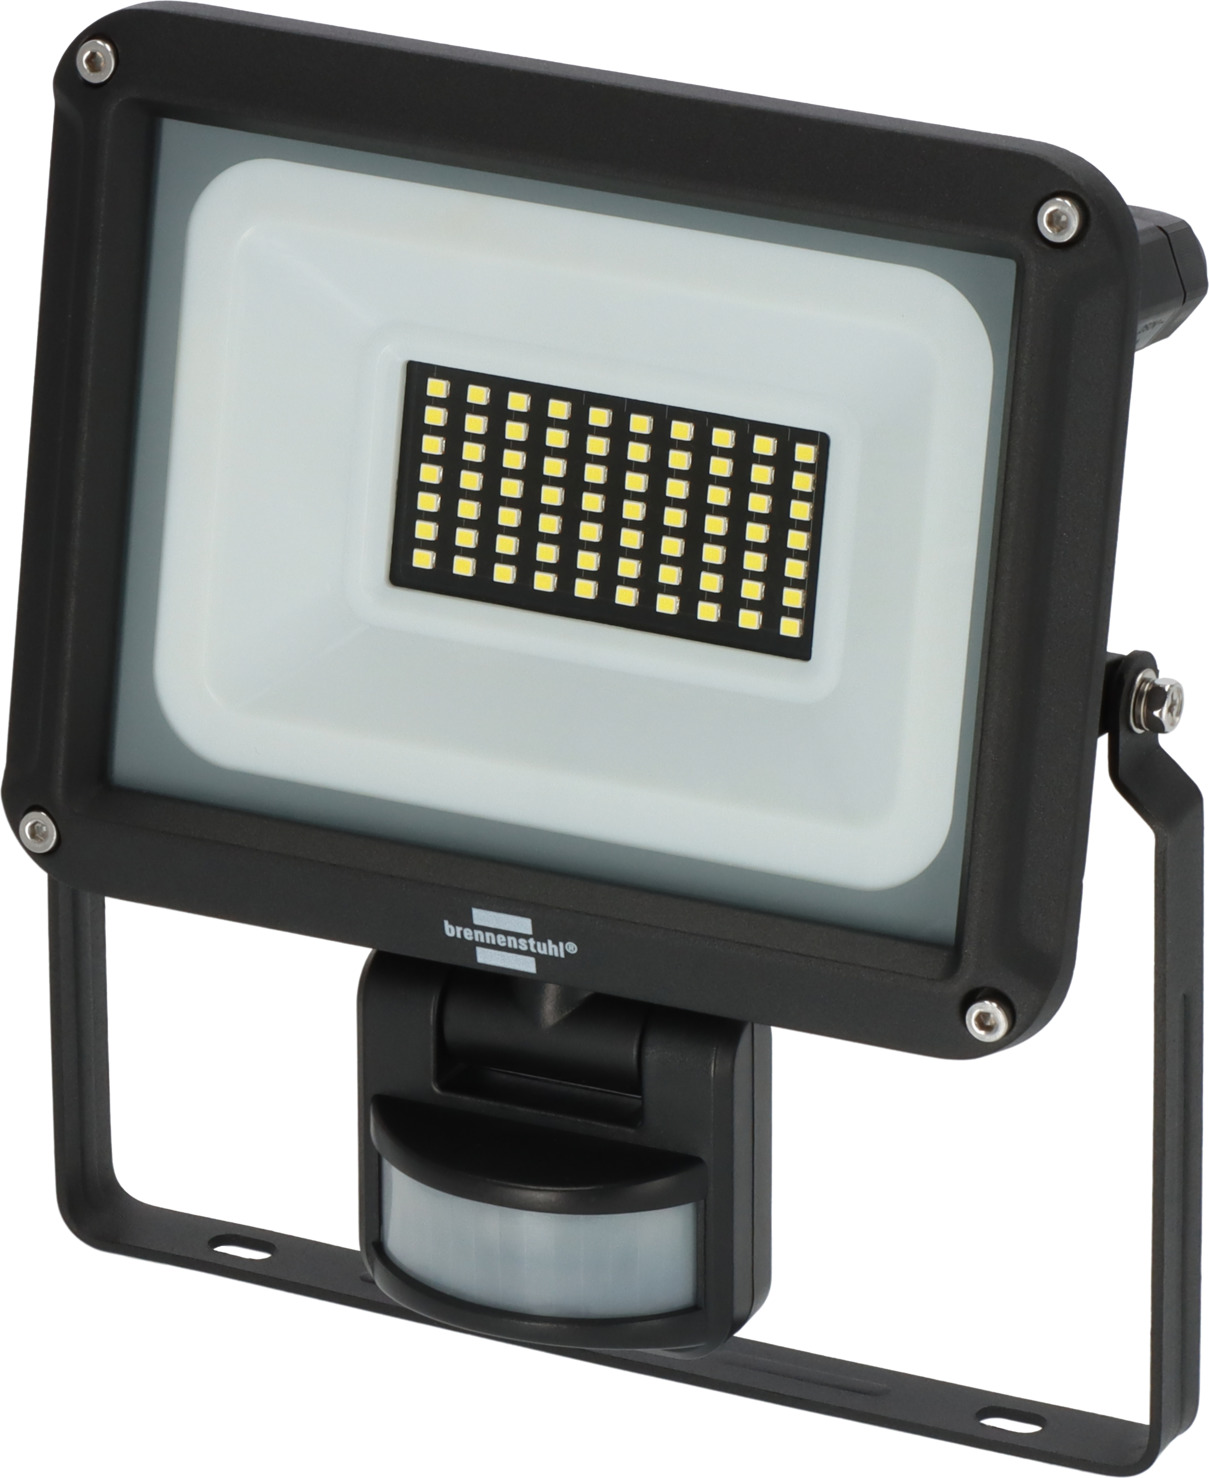 LED Strahler JARO 4060 IP65 brennenstuhl® P | 30W, 3450lm, Infrarot-Bewegungsmelder mit